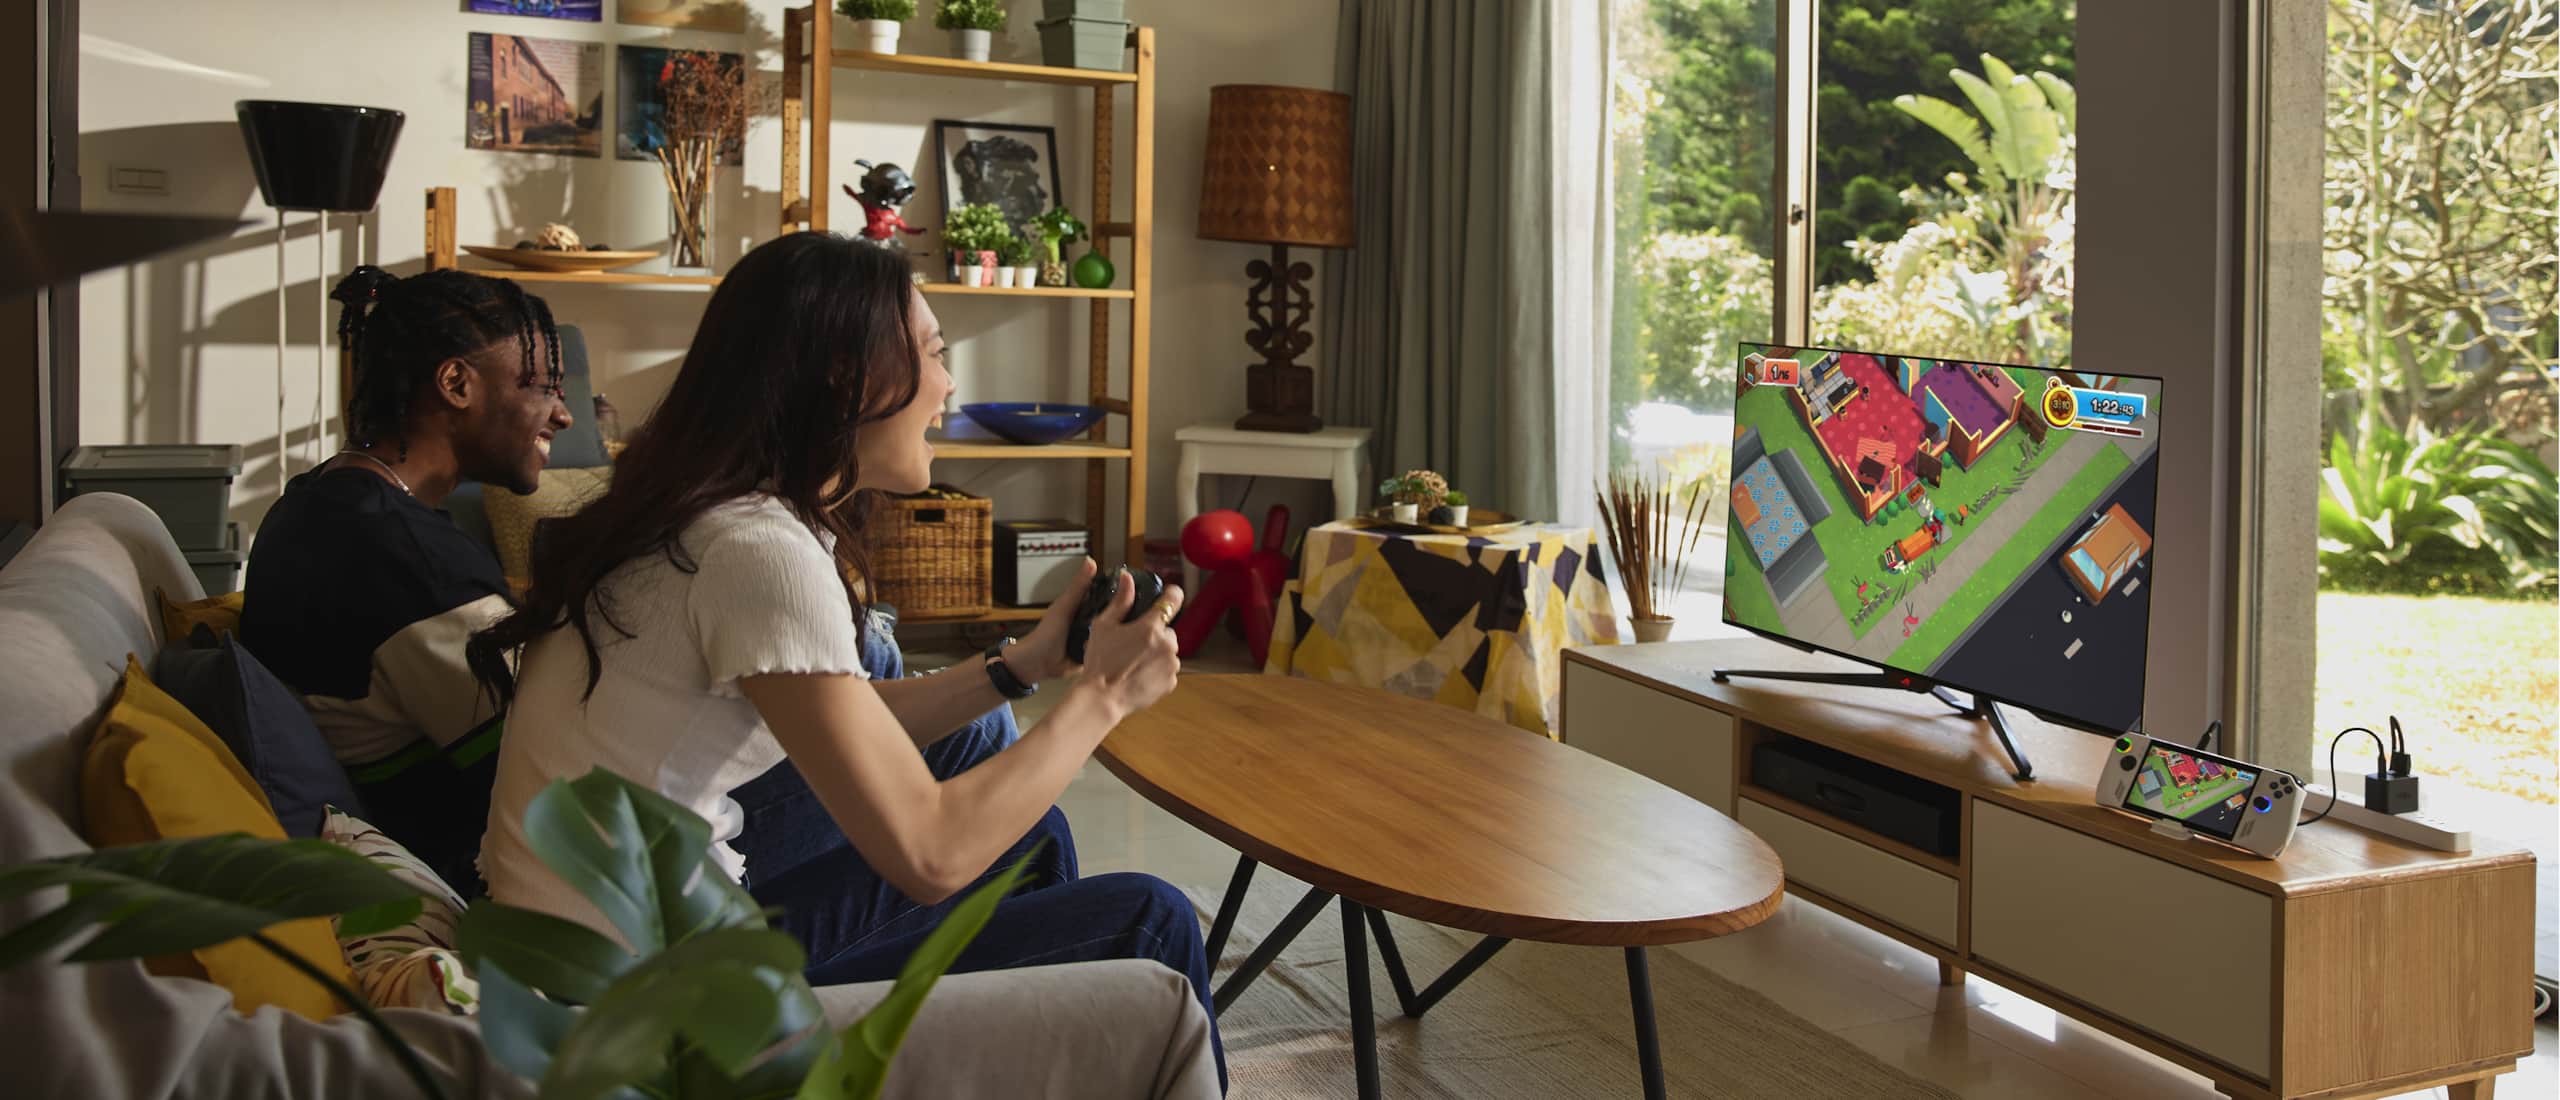 Два человека сидят на диване в гостиной. Подключив консоль ROG Ally к телевизору, они играют вместе в мультиплеере. 